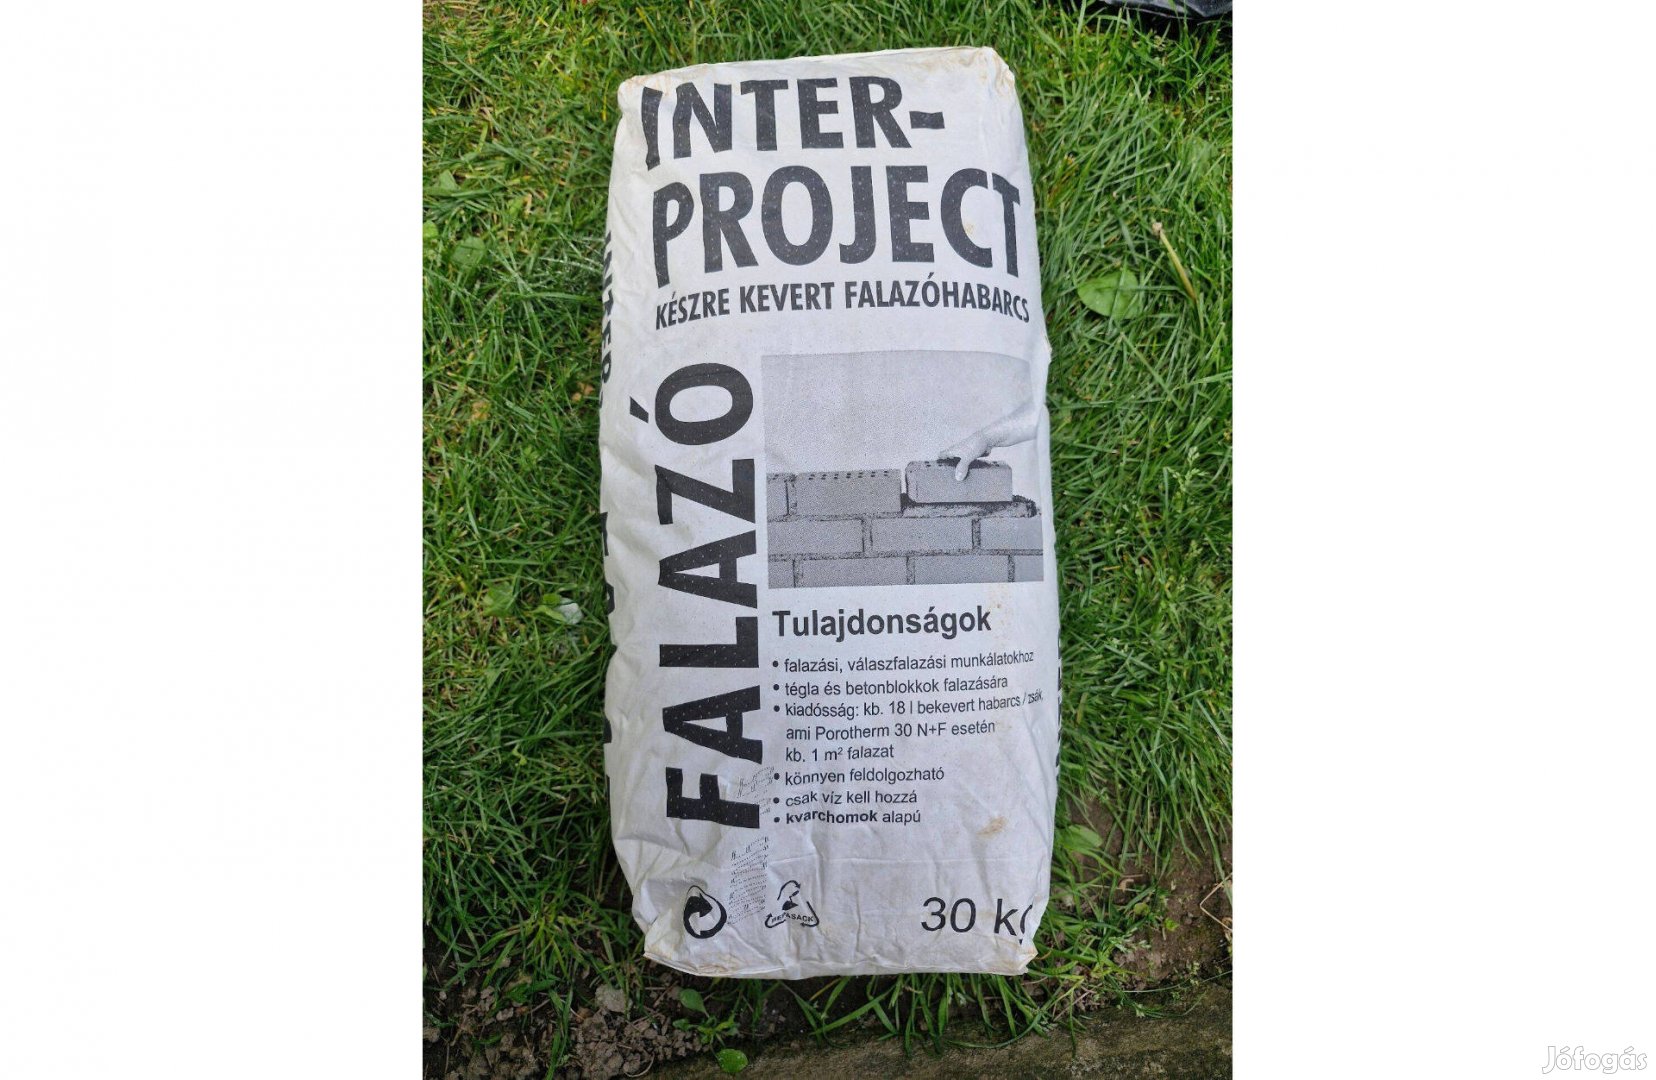 Inter-Project készre kevert falazó habarcs 30 kg-os zsák